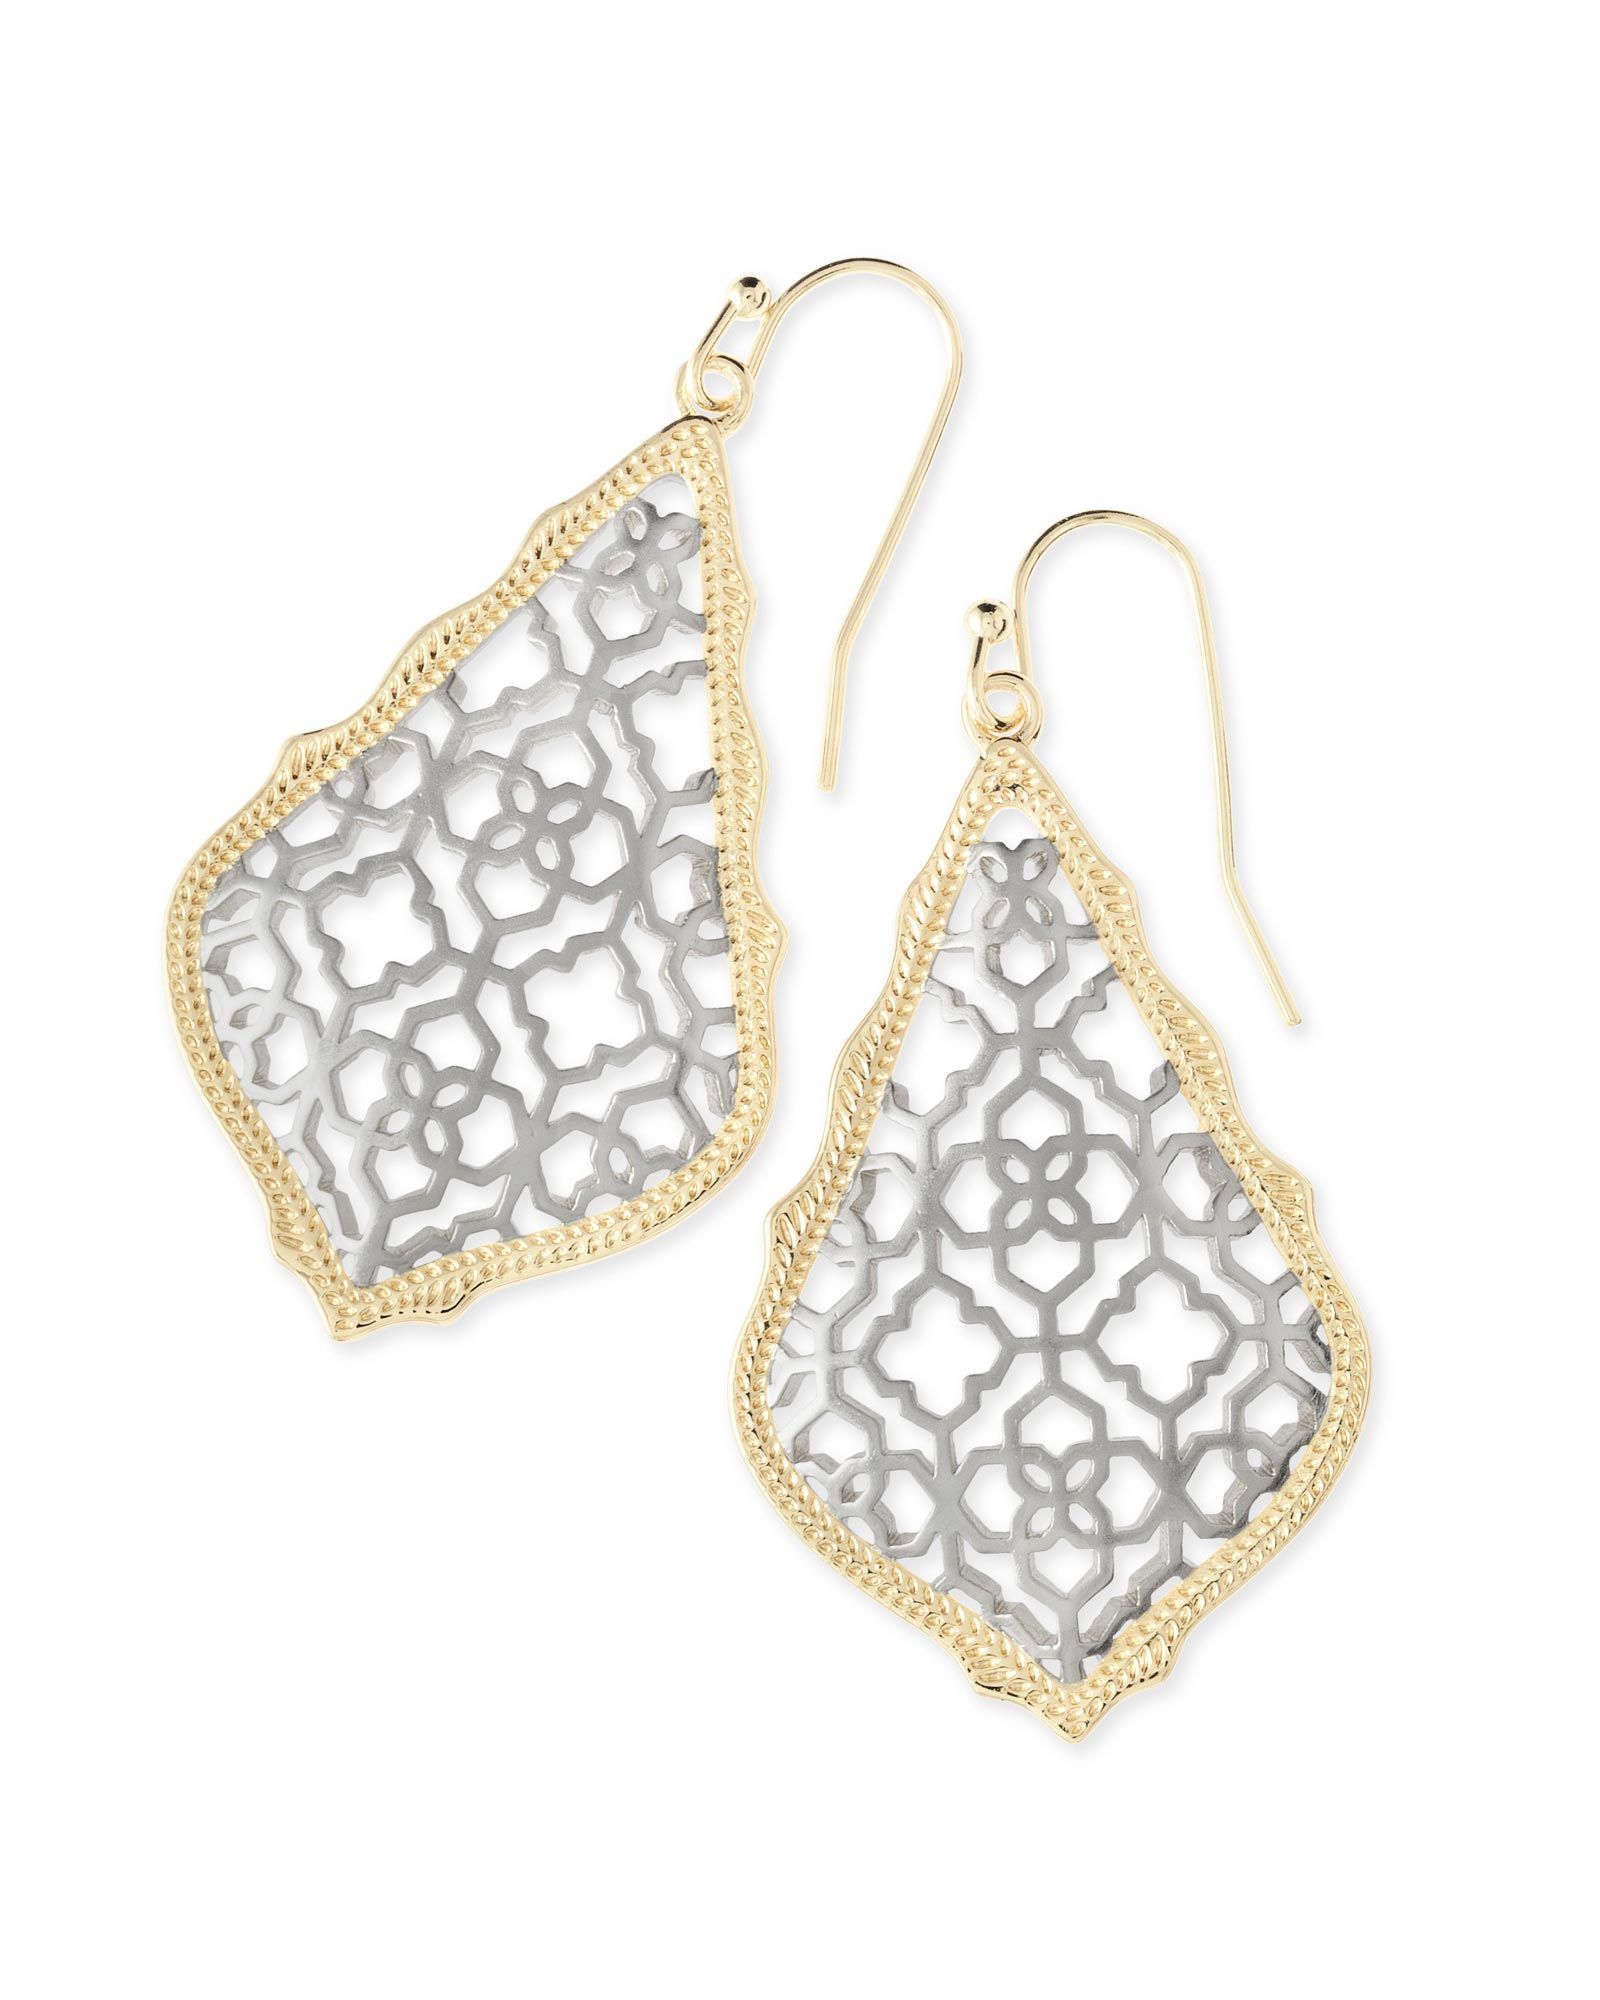 Addie Gold Drop Earrings in Silver Filigree | Kendra Scott